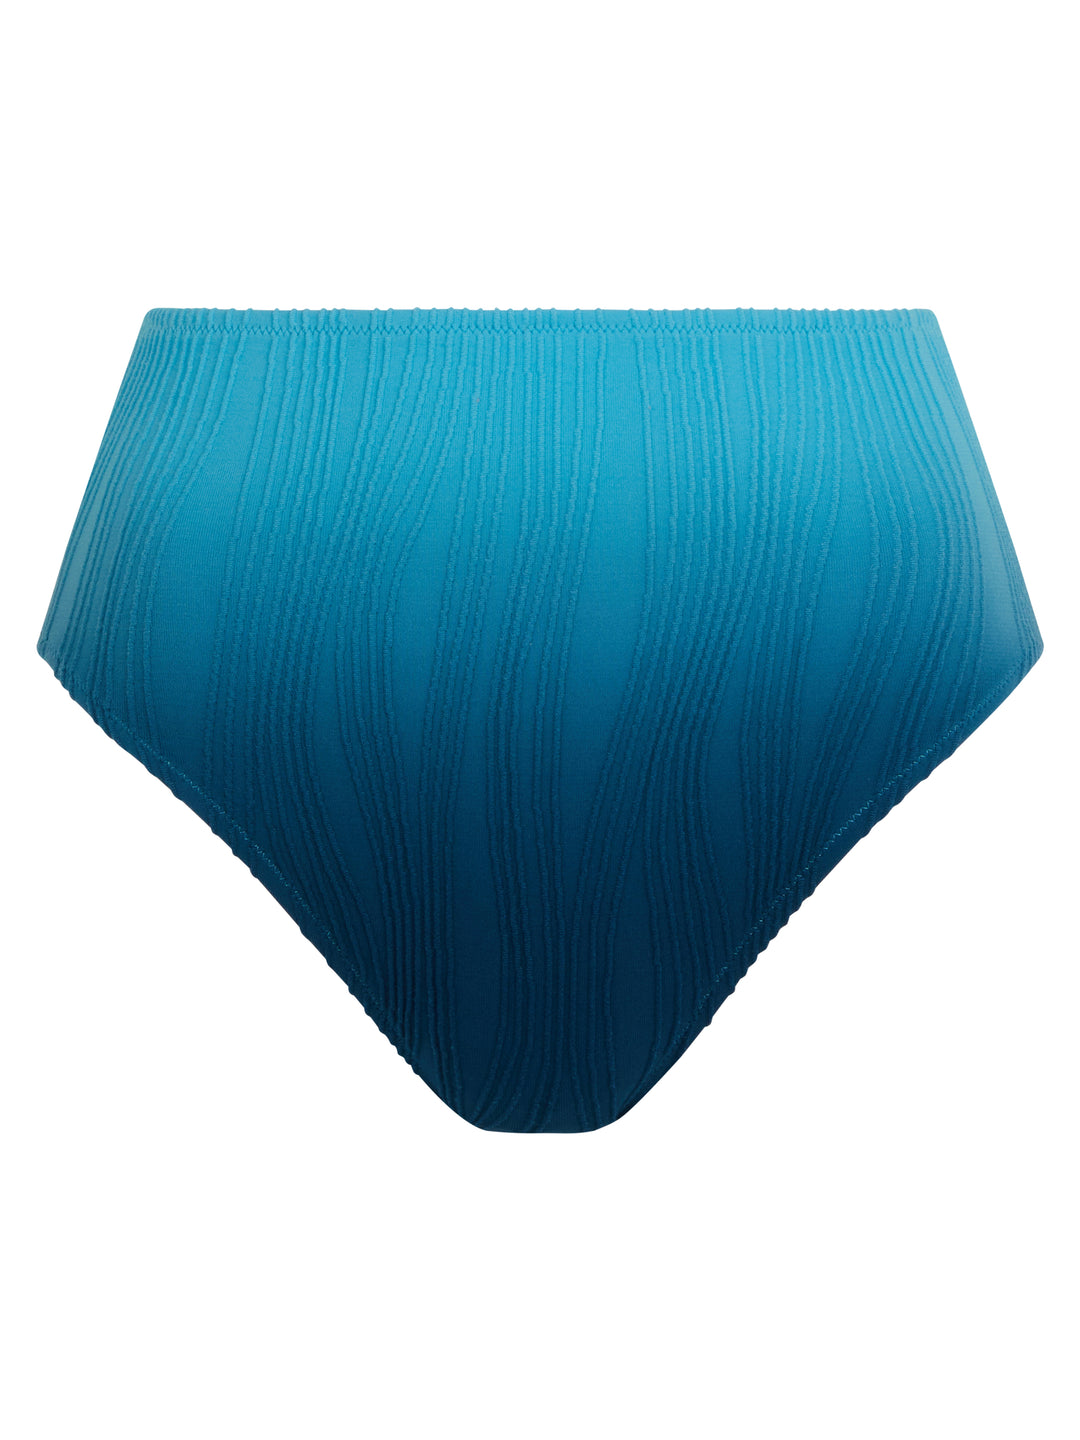 Chantelle 泳衣 - 均碼游泳三角褲 藍色領帶與染色